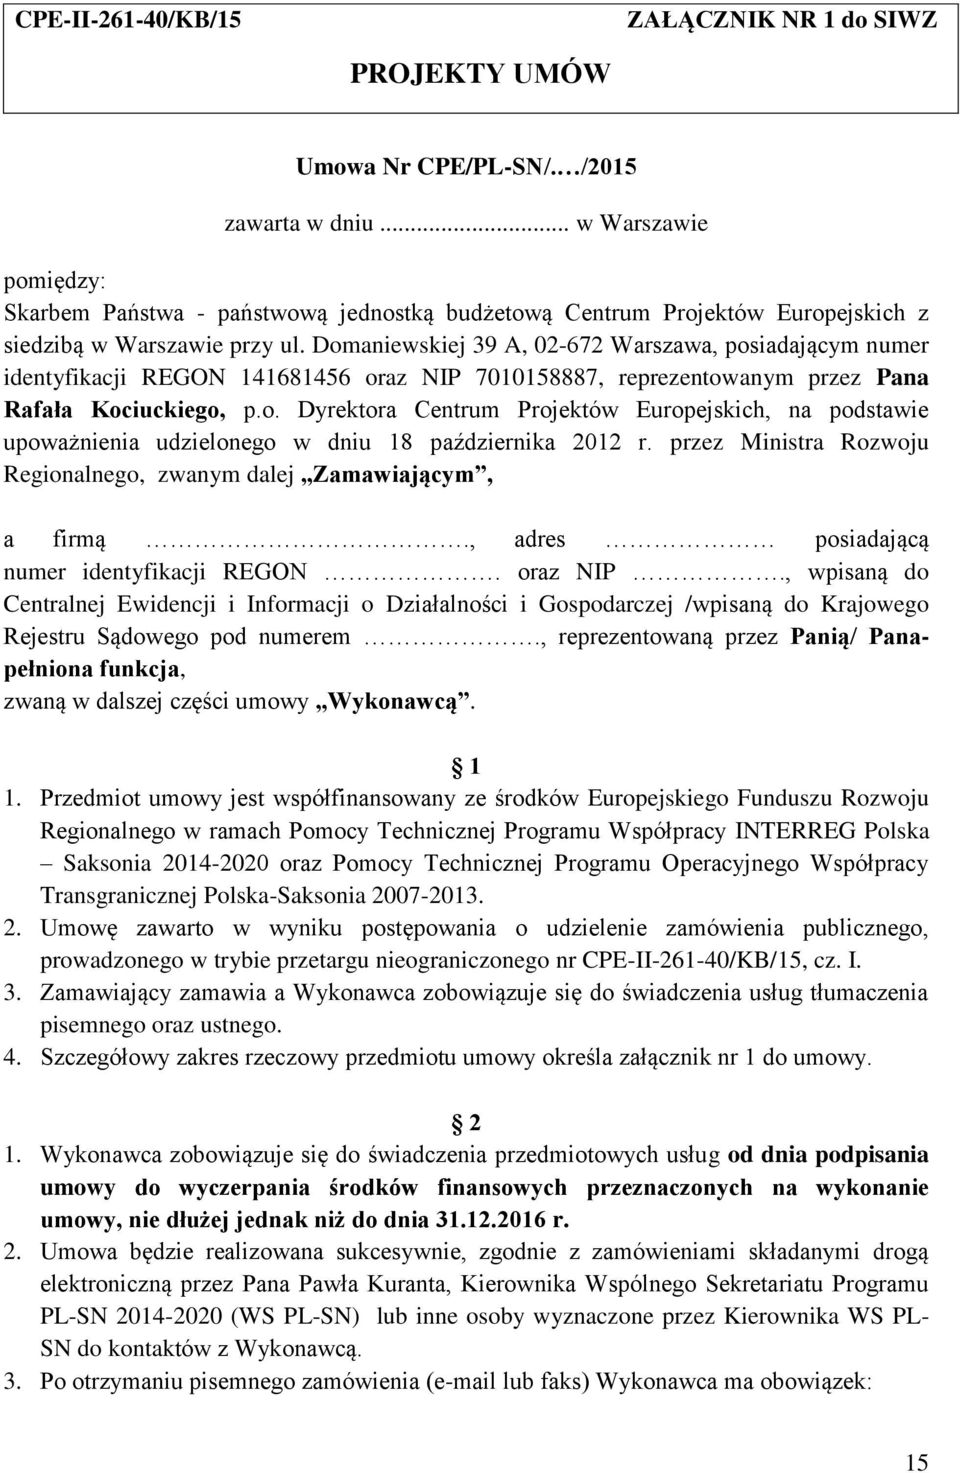 Domaniewskiej 39 A, 02-672 Warszawa, posiadającym numer identyfikacji REGON 141681456 oraz NIP 7010158887, reprezentowanym przez Pana Rafała Kociuckiego, p.o. Dyrektora Centrum Projektów Europejskich, na podstawie upoważnienia udzielonego w dniu 18 października 2012 r.